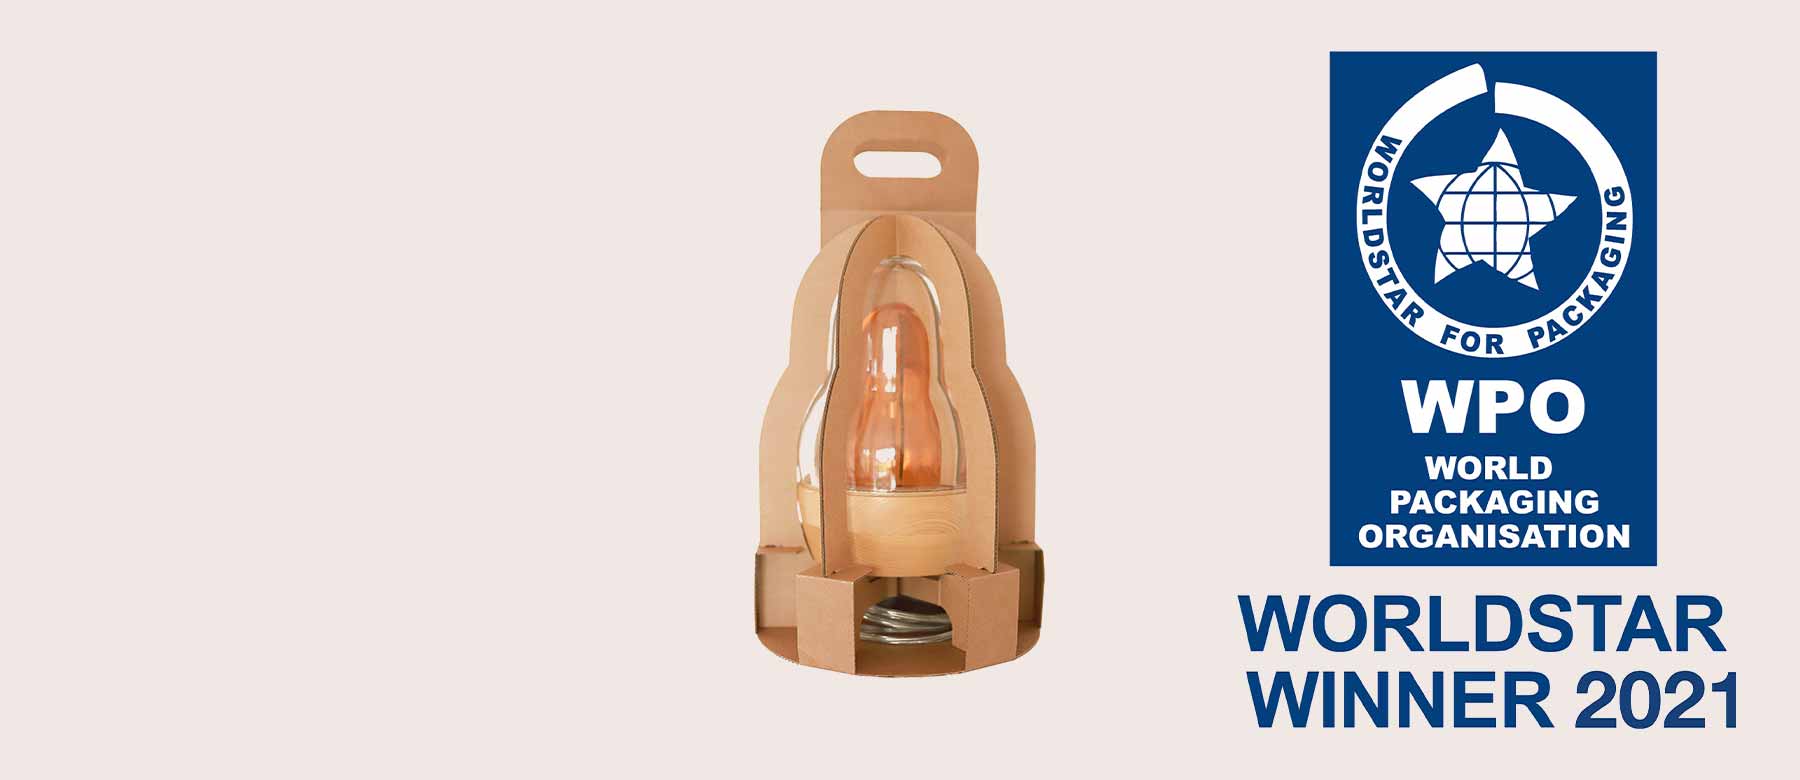 L’emballage de la lampe design réalisé par THIMM remporte le WorldStar Packaging Award 2021